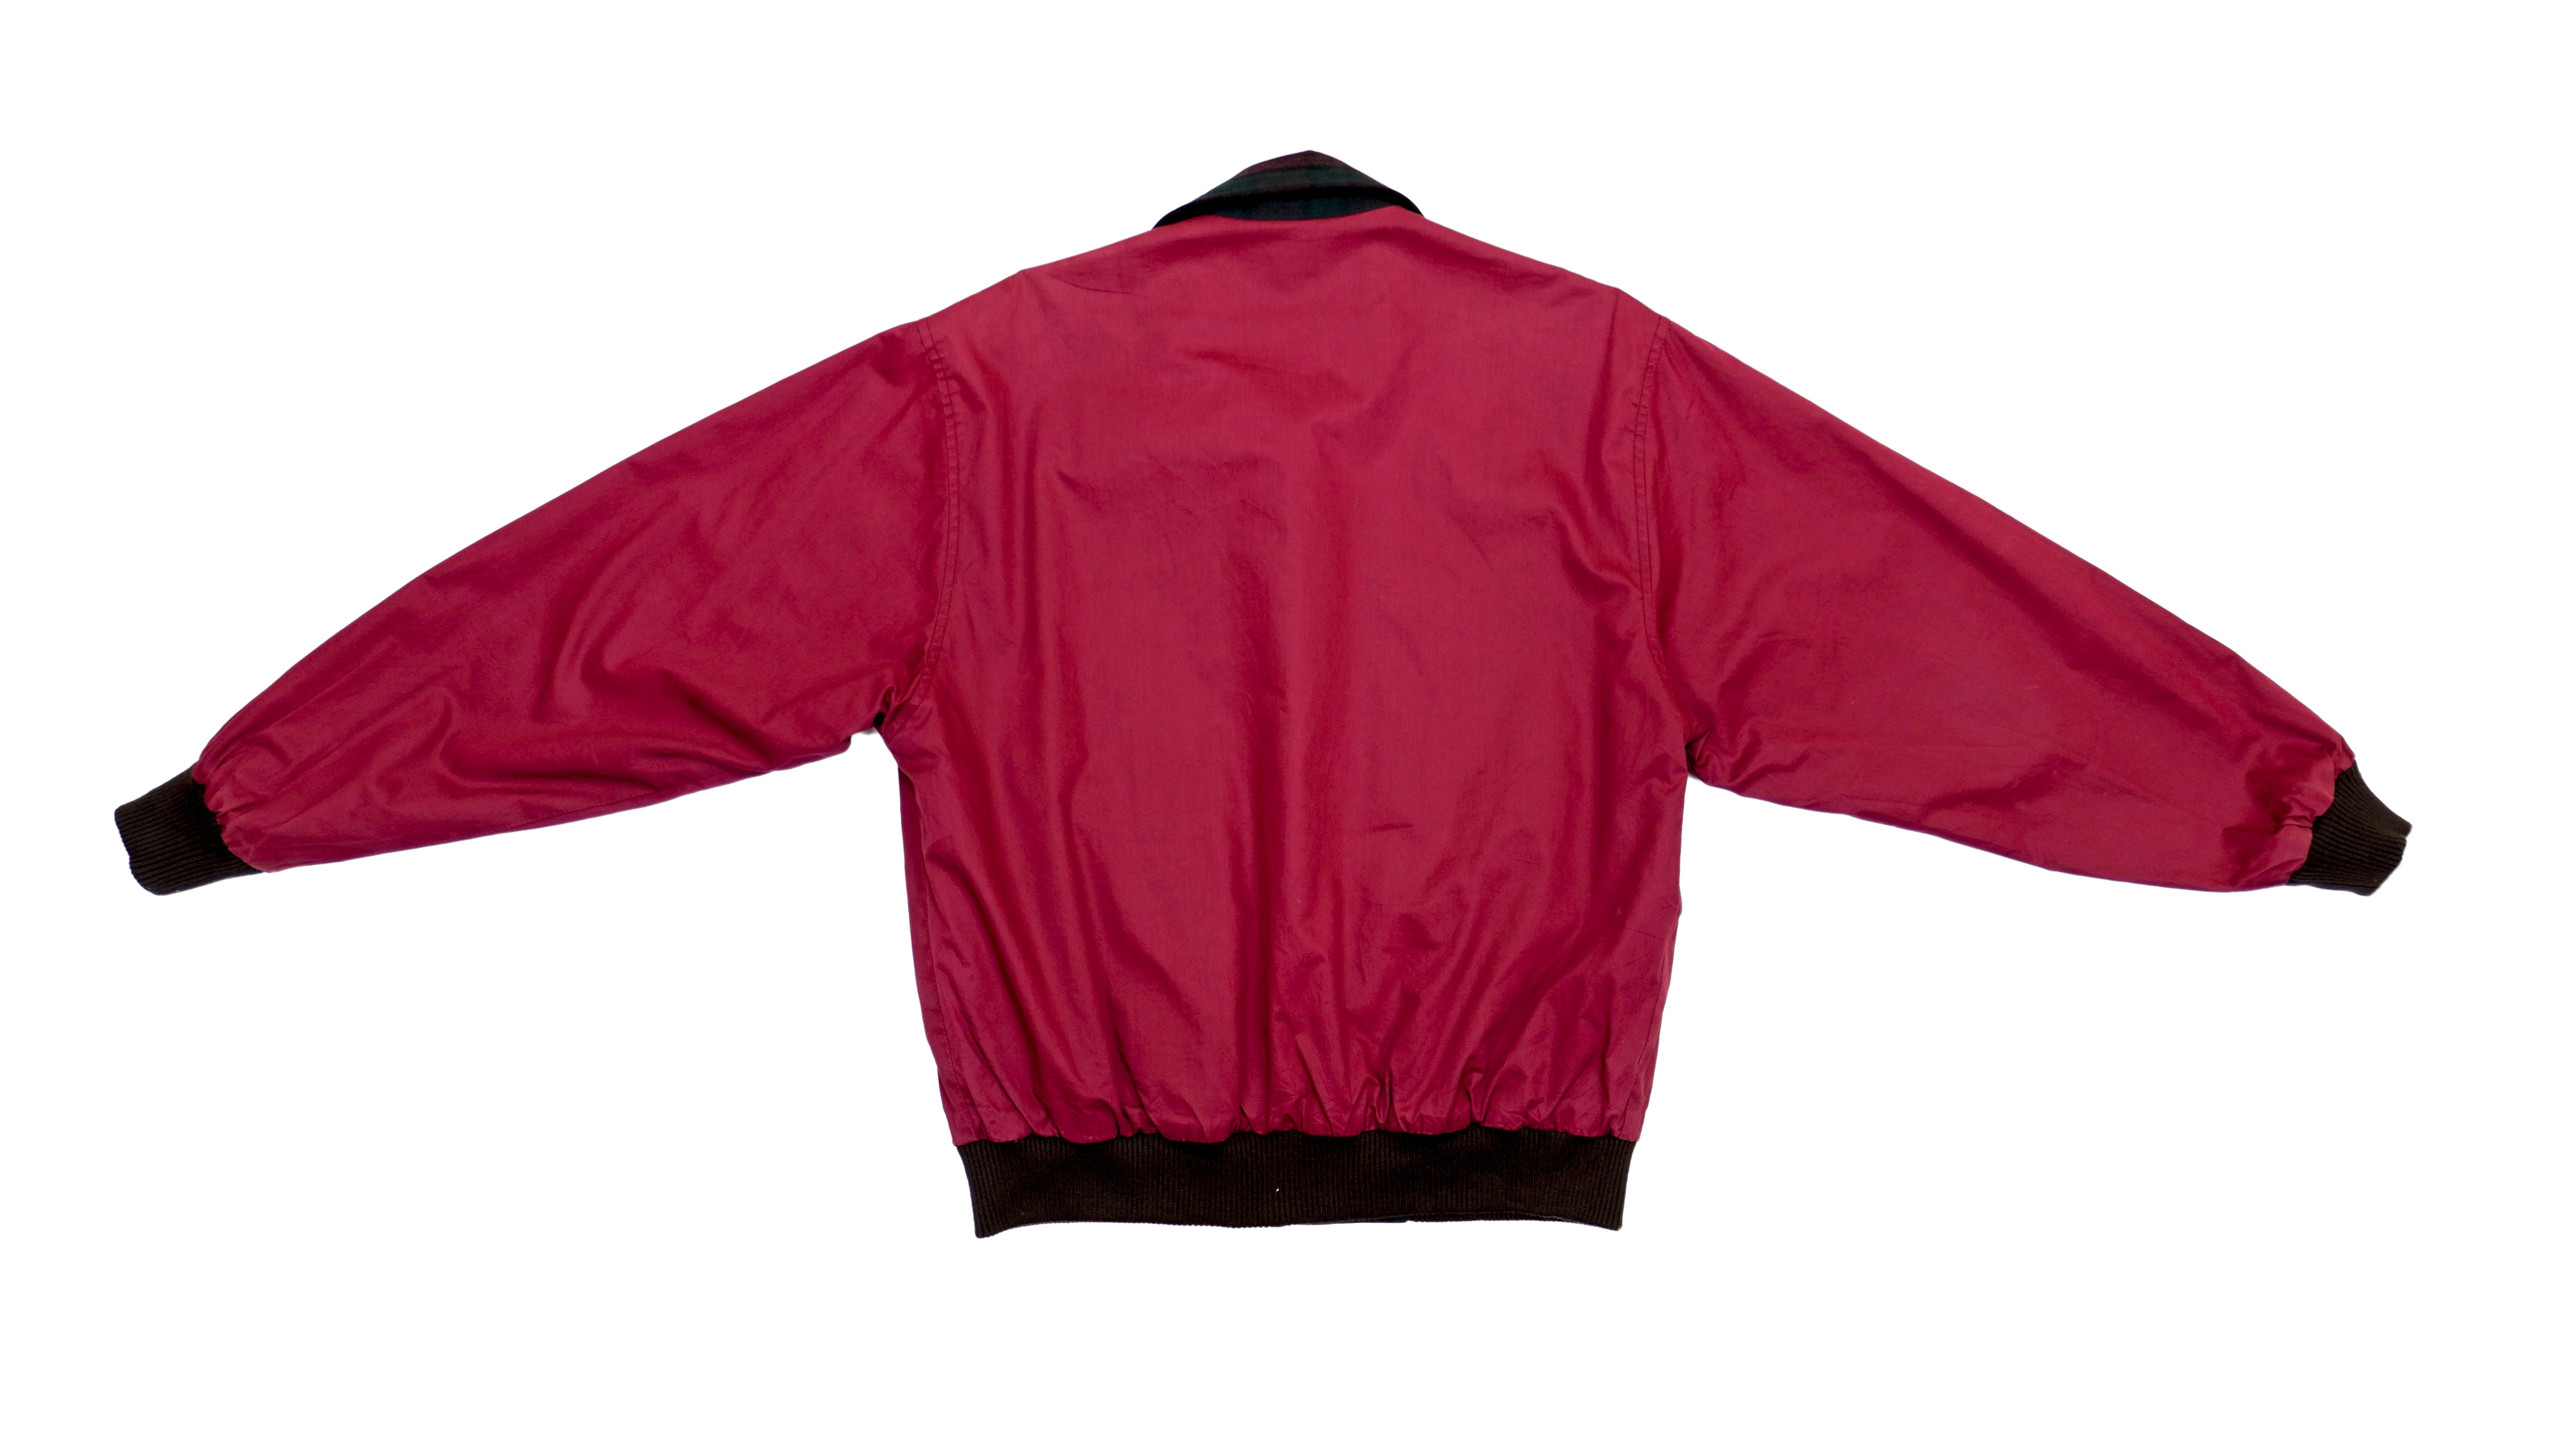 Vintage Silk Bomber Jacket. Oversize Unisex Bomber Jacket. Red